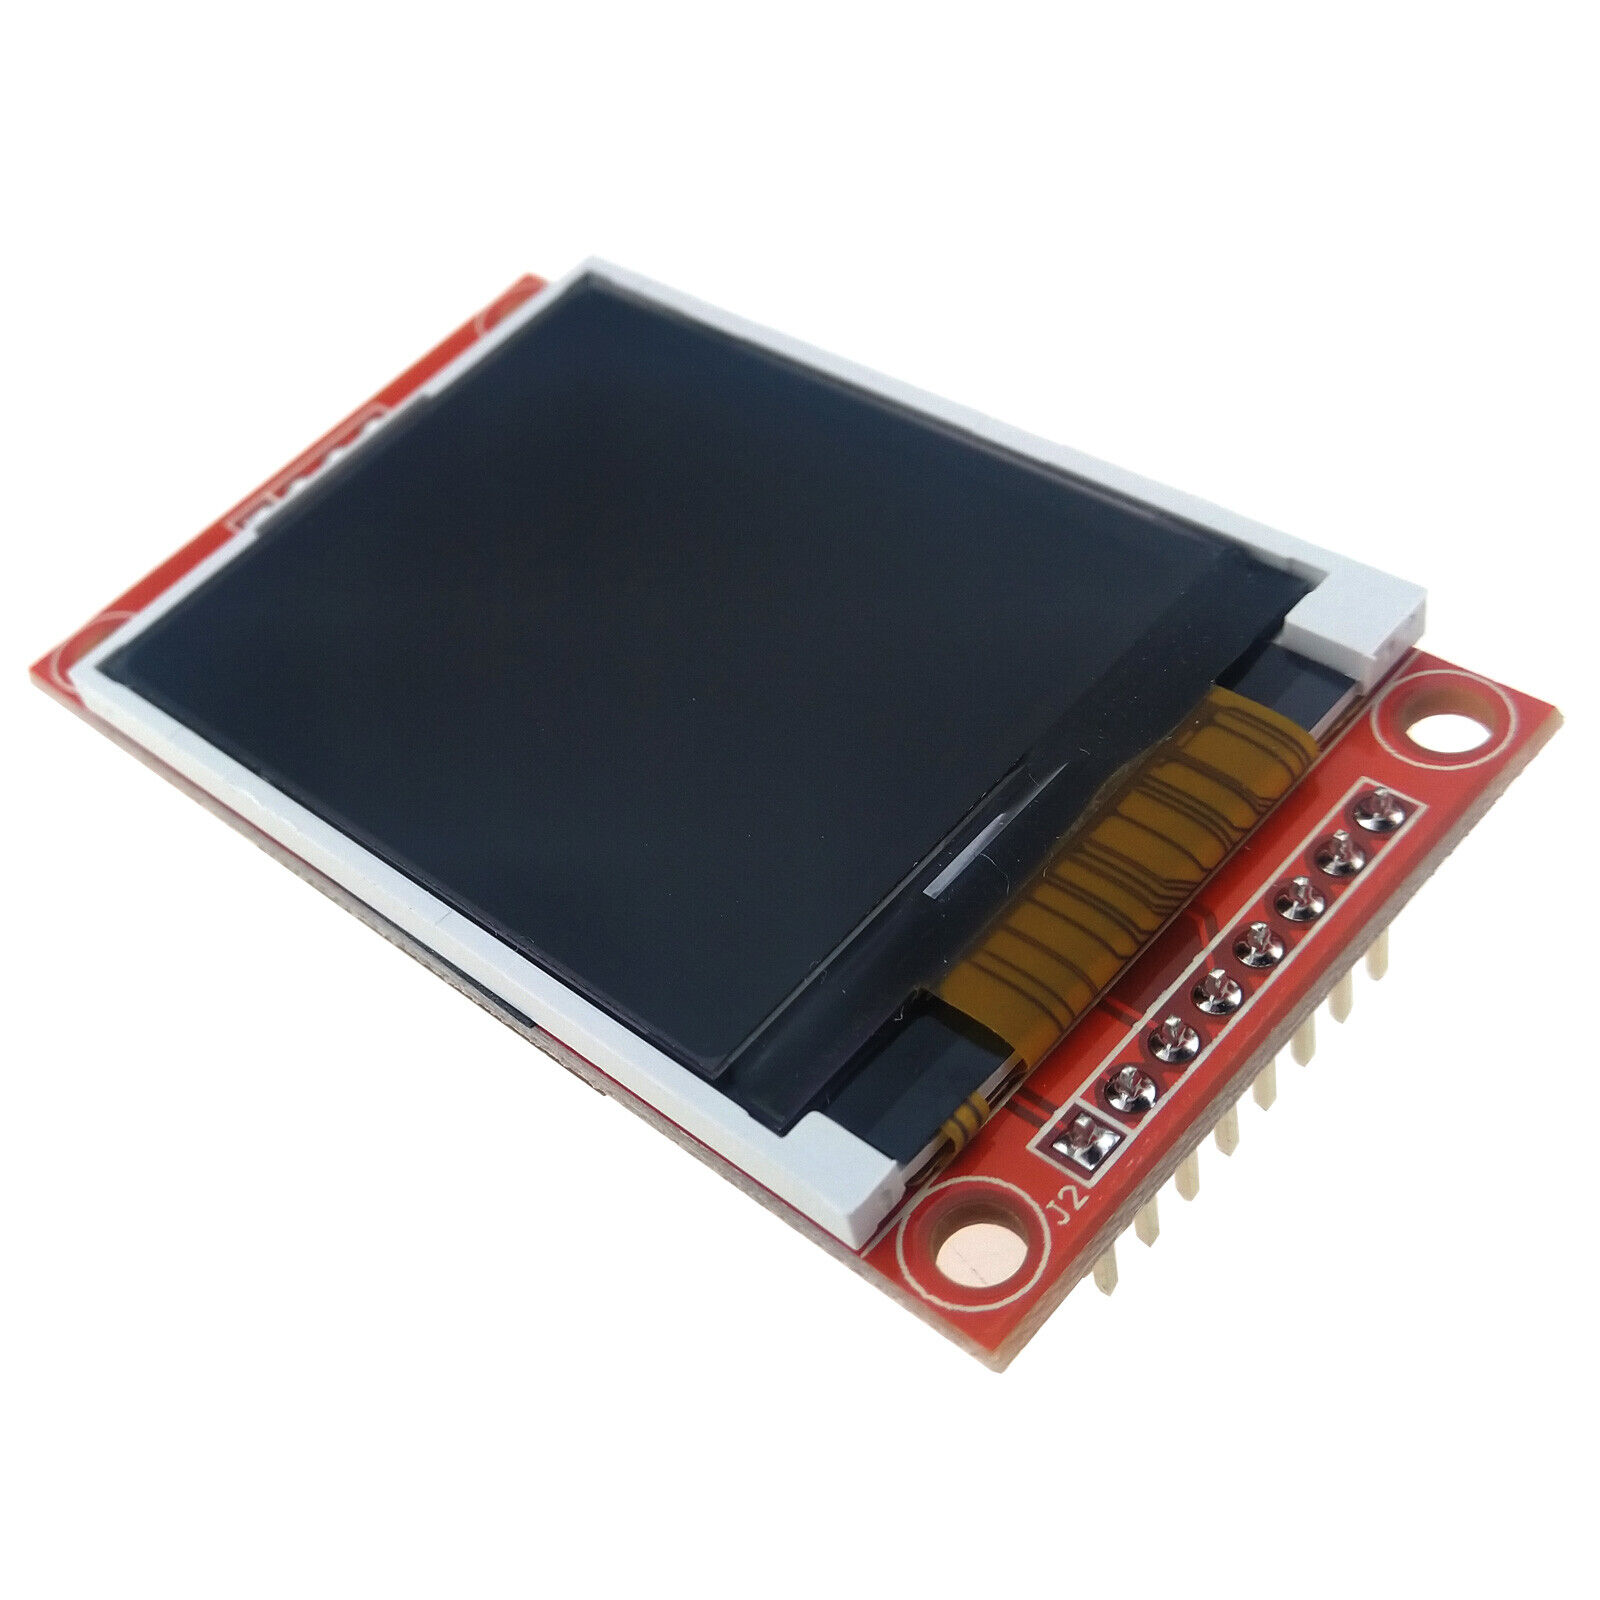 1.8 inch TFT LCD Color Display Module SPI ST7735 128x160 AVR STM32 ARM SD Socket